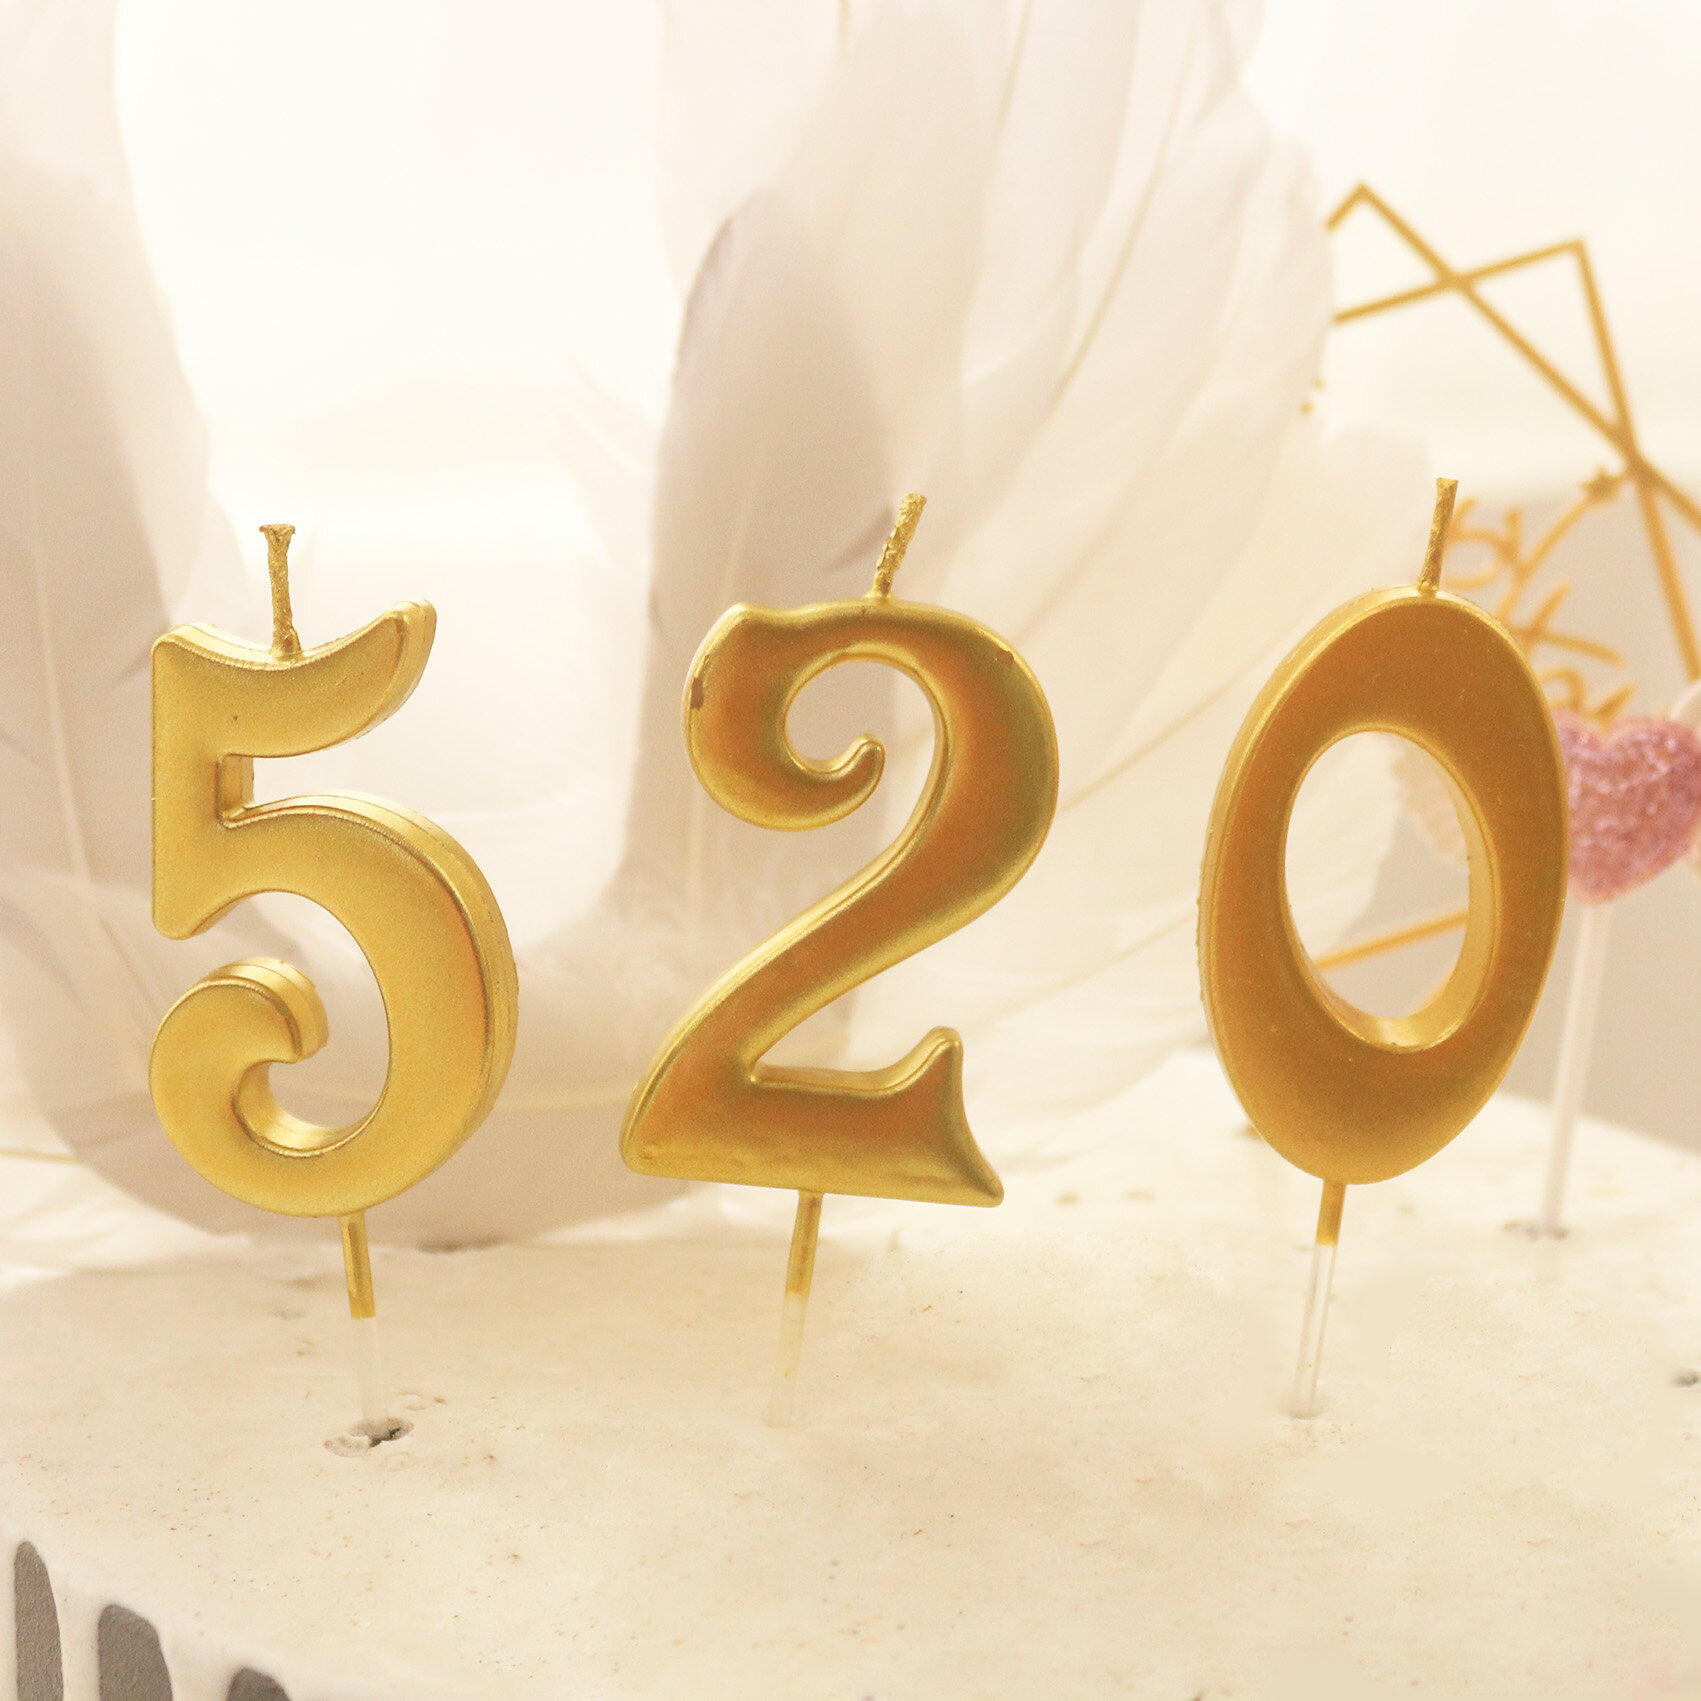 創意金色生日蠟燭寶寶周歲生日布置生日蛋糕數字蠟燭生日裝飾派對